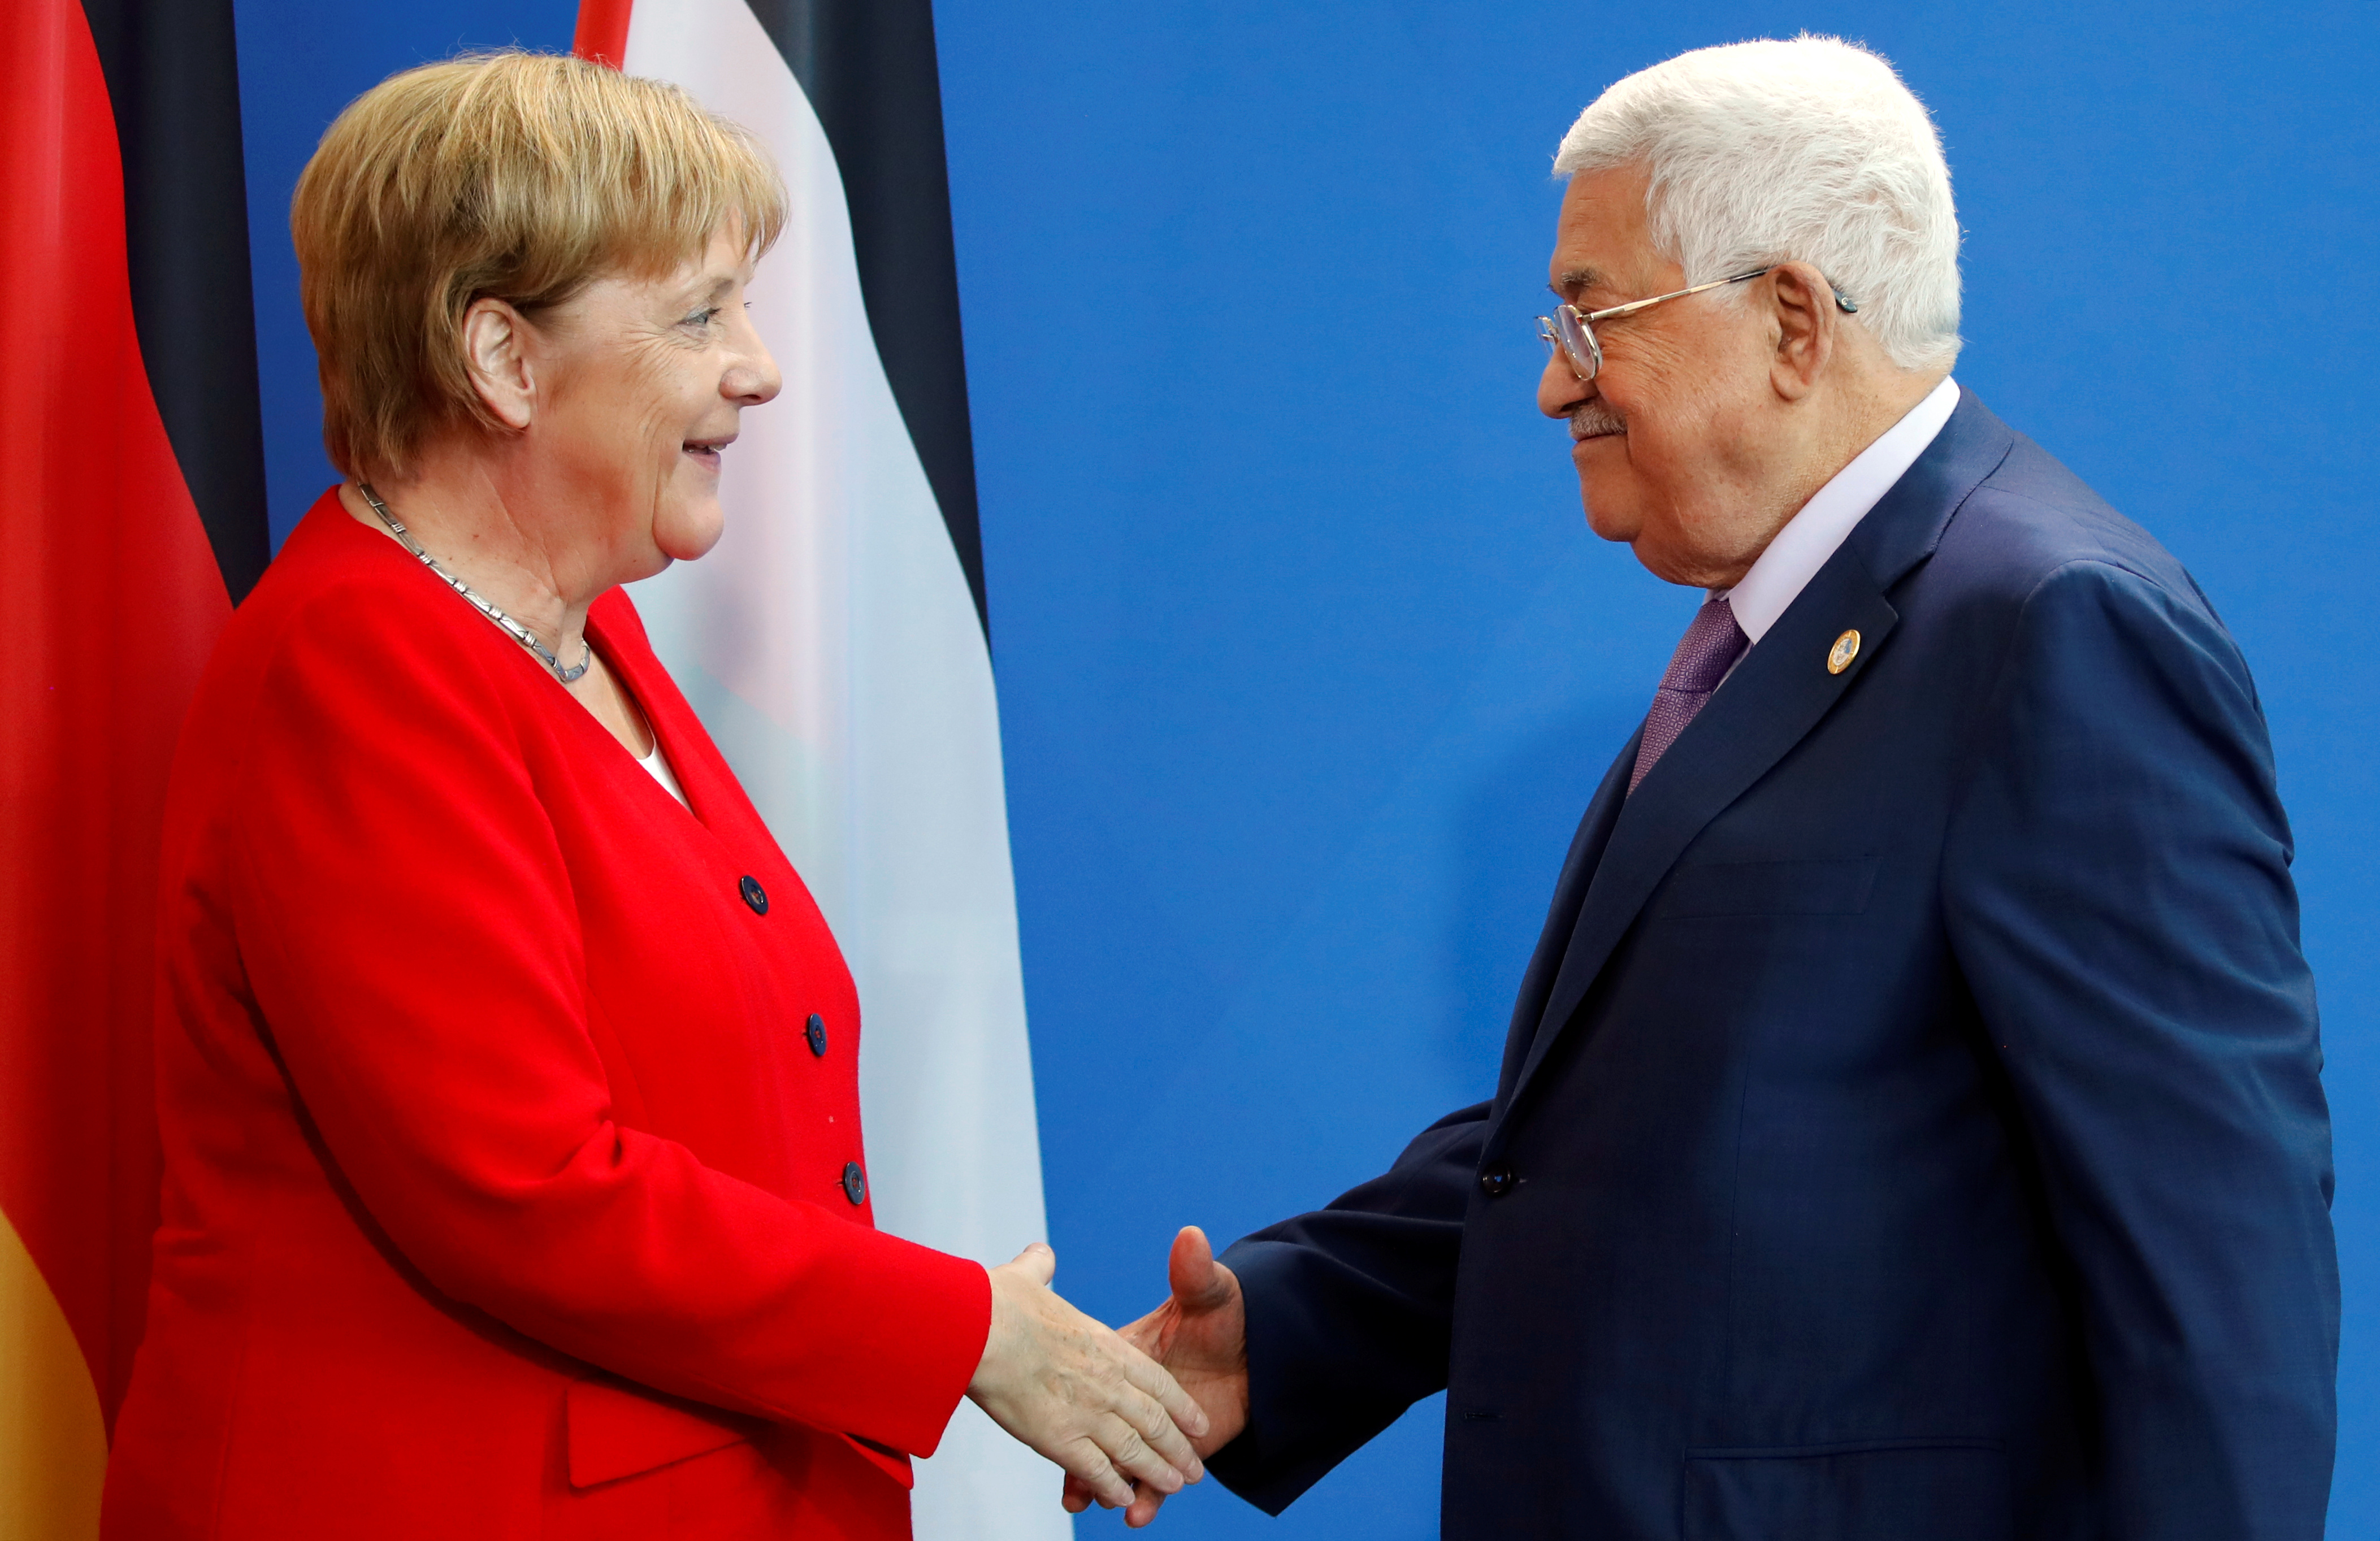 Tras su visita a Alemania, Abbás tiene previsto visitar Francia el próximo mes, confirmó el embajador palestino en París, Salman Al-Herfy.